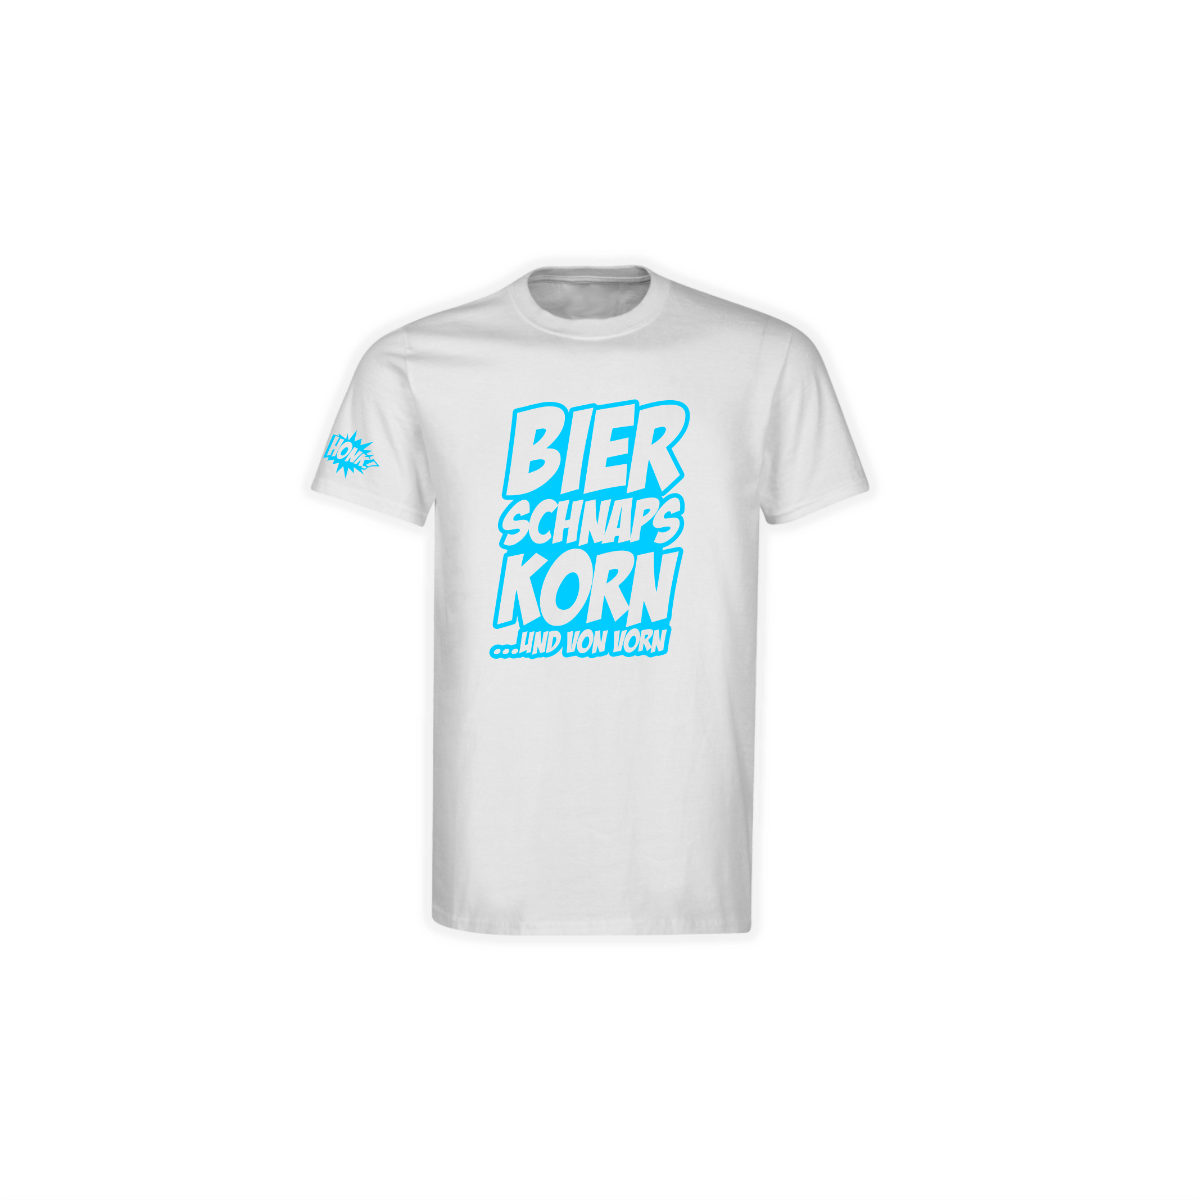 T-Shirt "BIER SCHNAPS KORN"